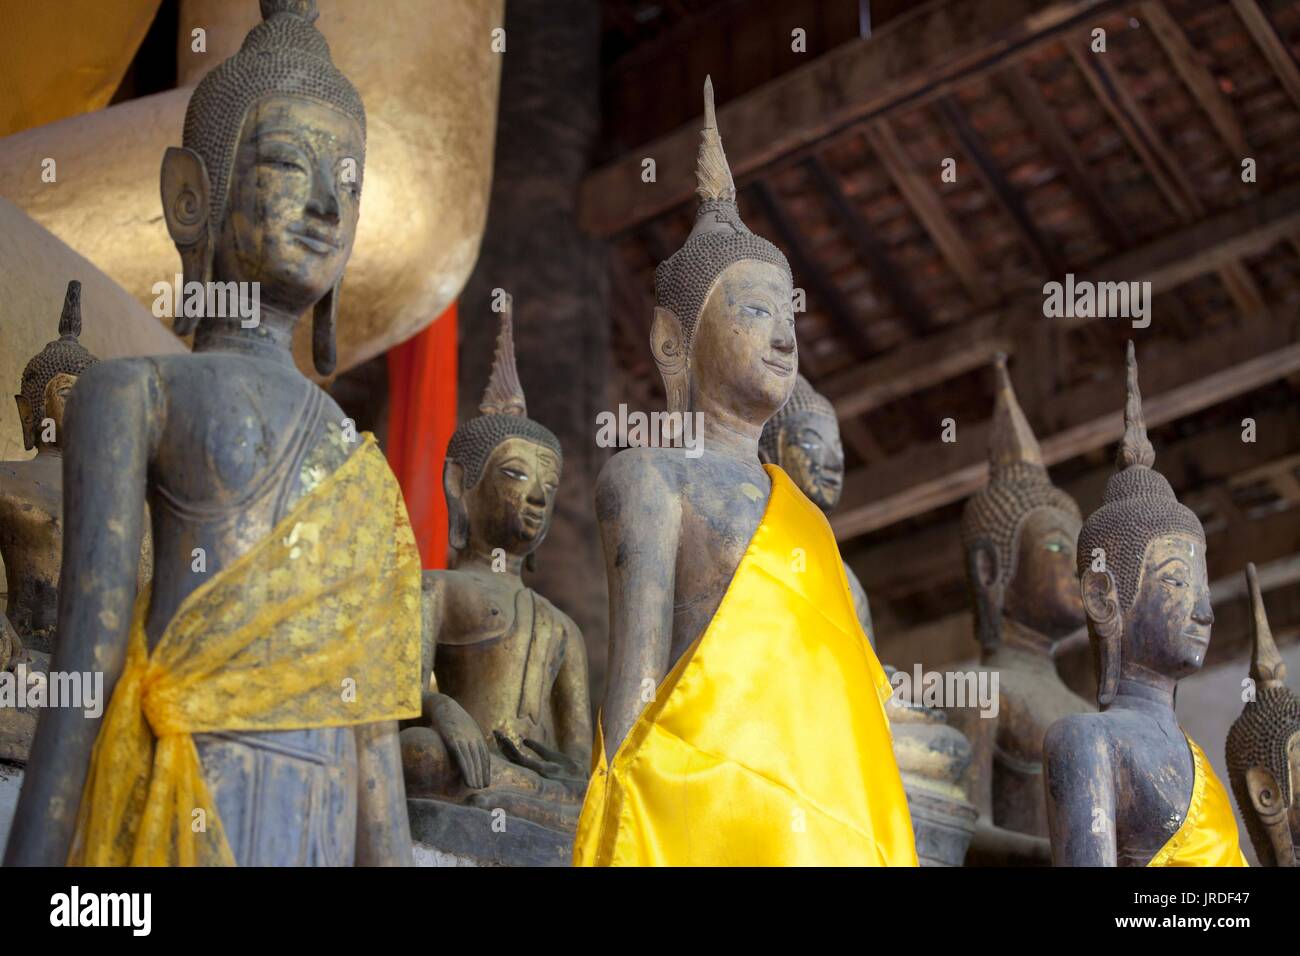 Les Statues de Bouddha à l'intérieur, au Laos Banque D'Images